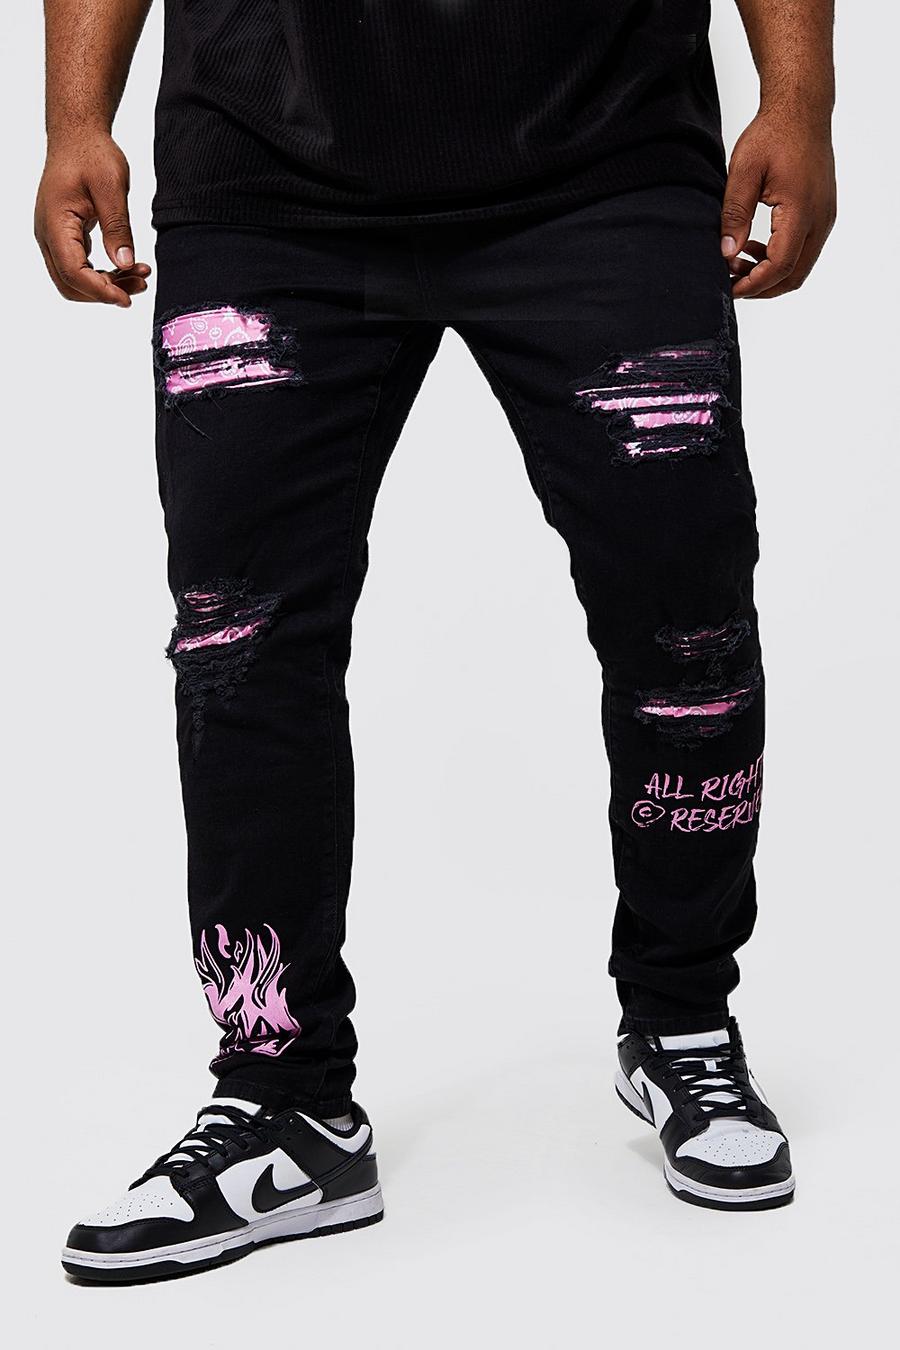 Black סקיני ג'ינס עם הדפס בנדנה-גרפיטי וקרעים, מידות גדולות